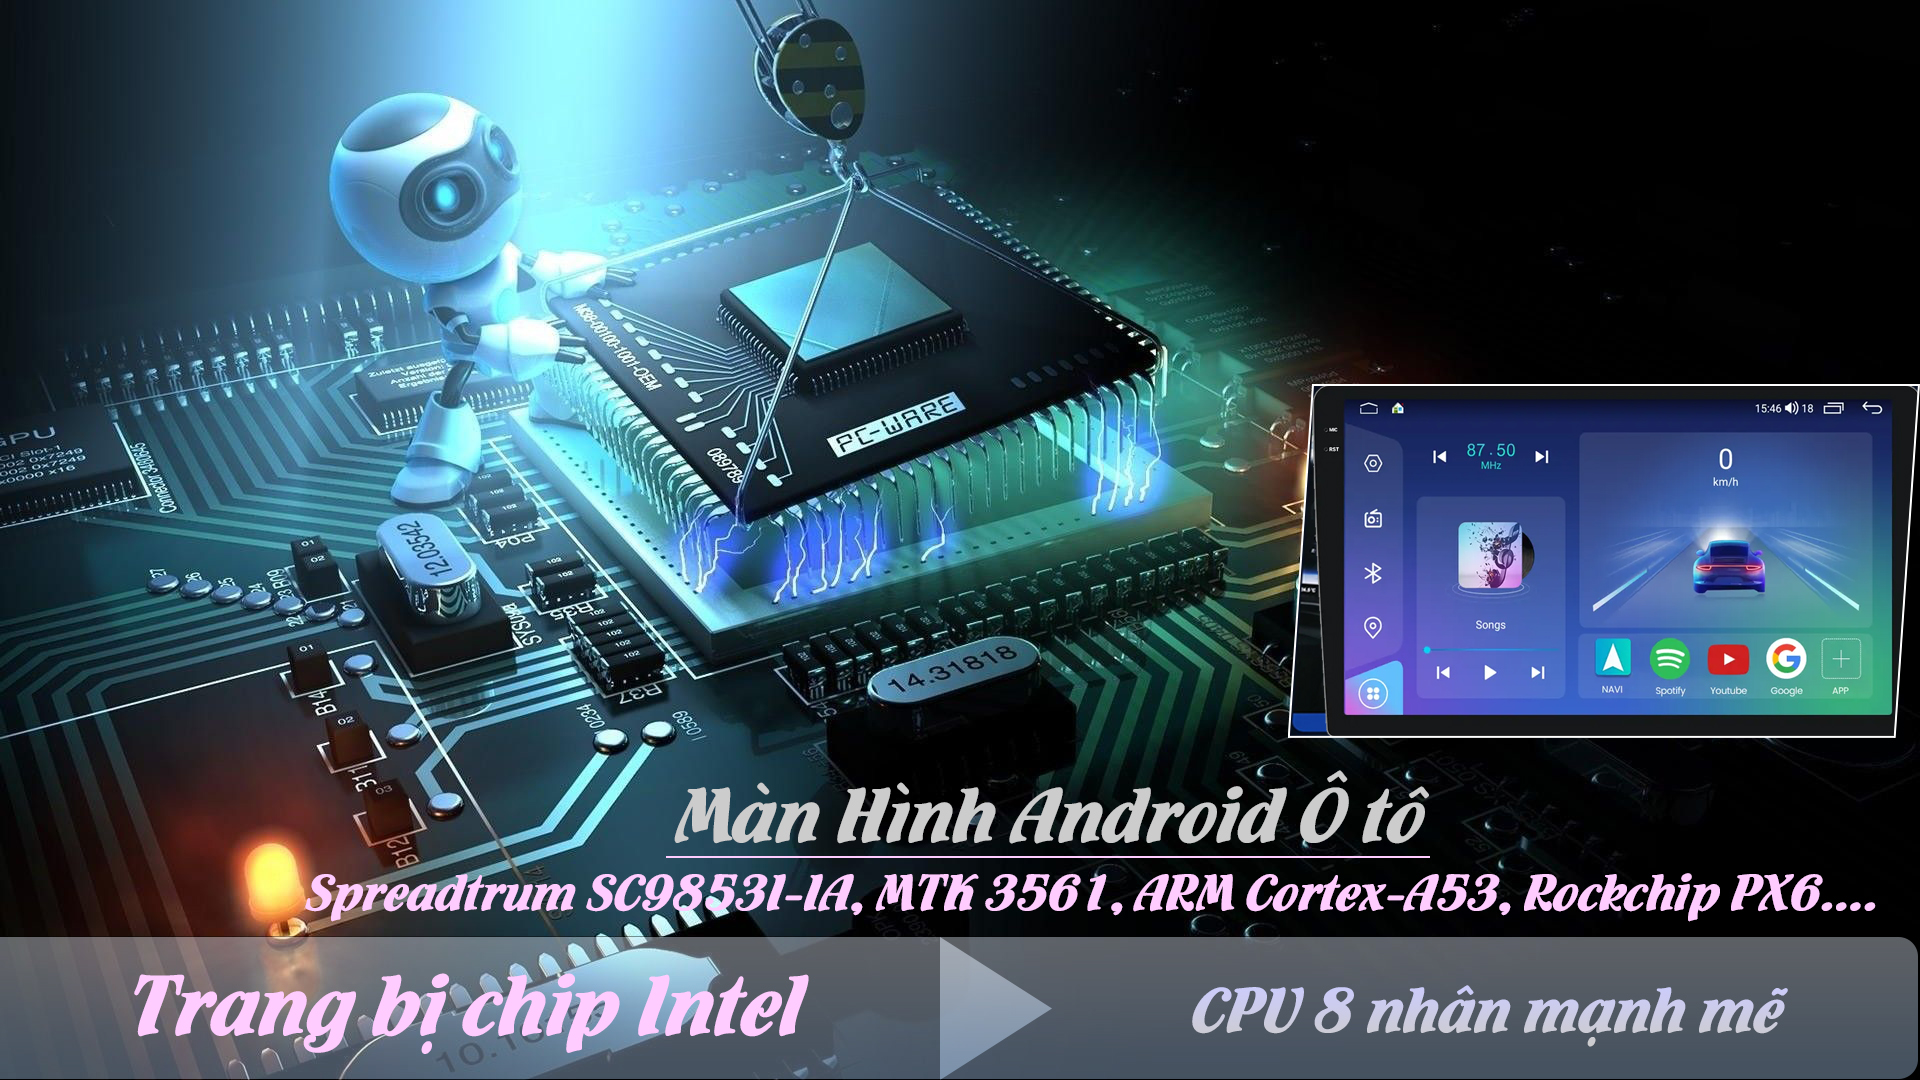 Màn hình android ô tô thông minh được hỗ trợ trang bị CPU 8 nhân manh mẽ